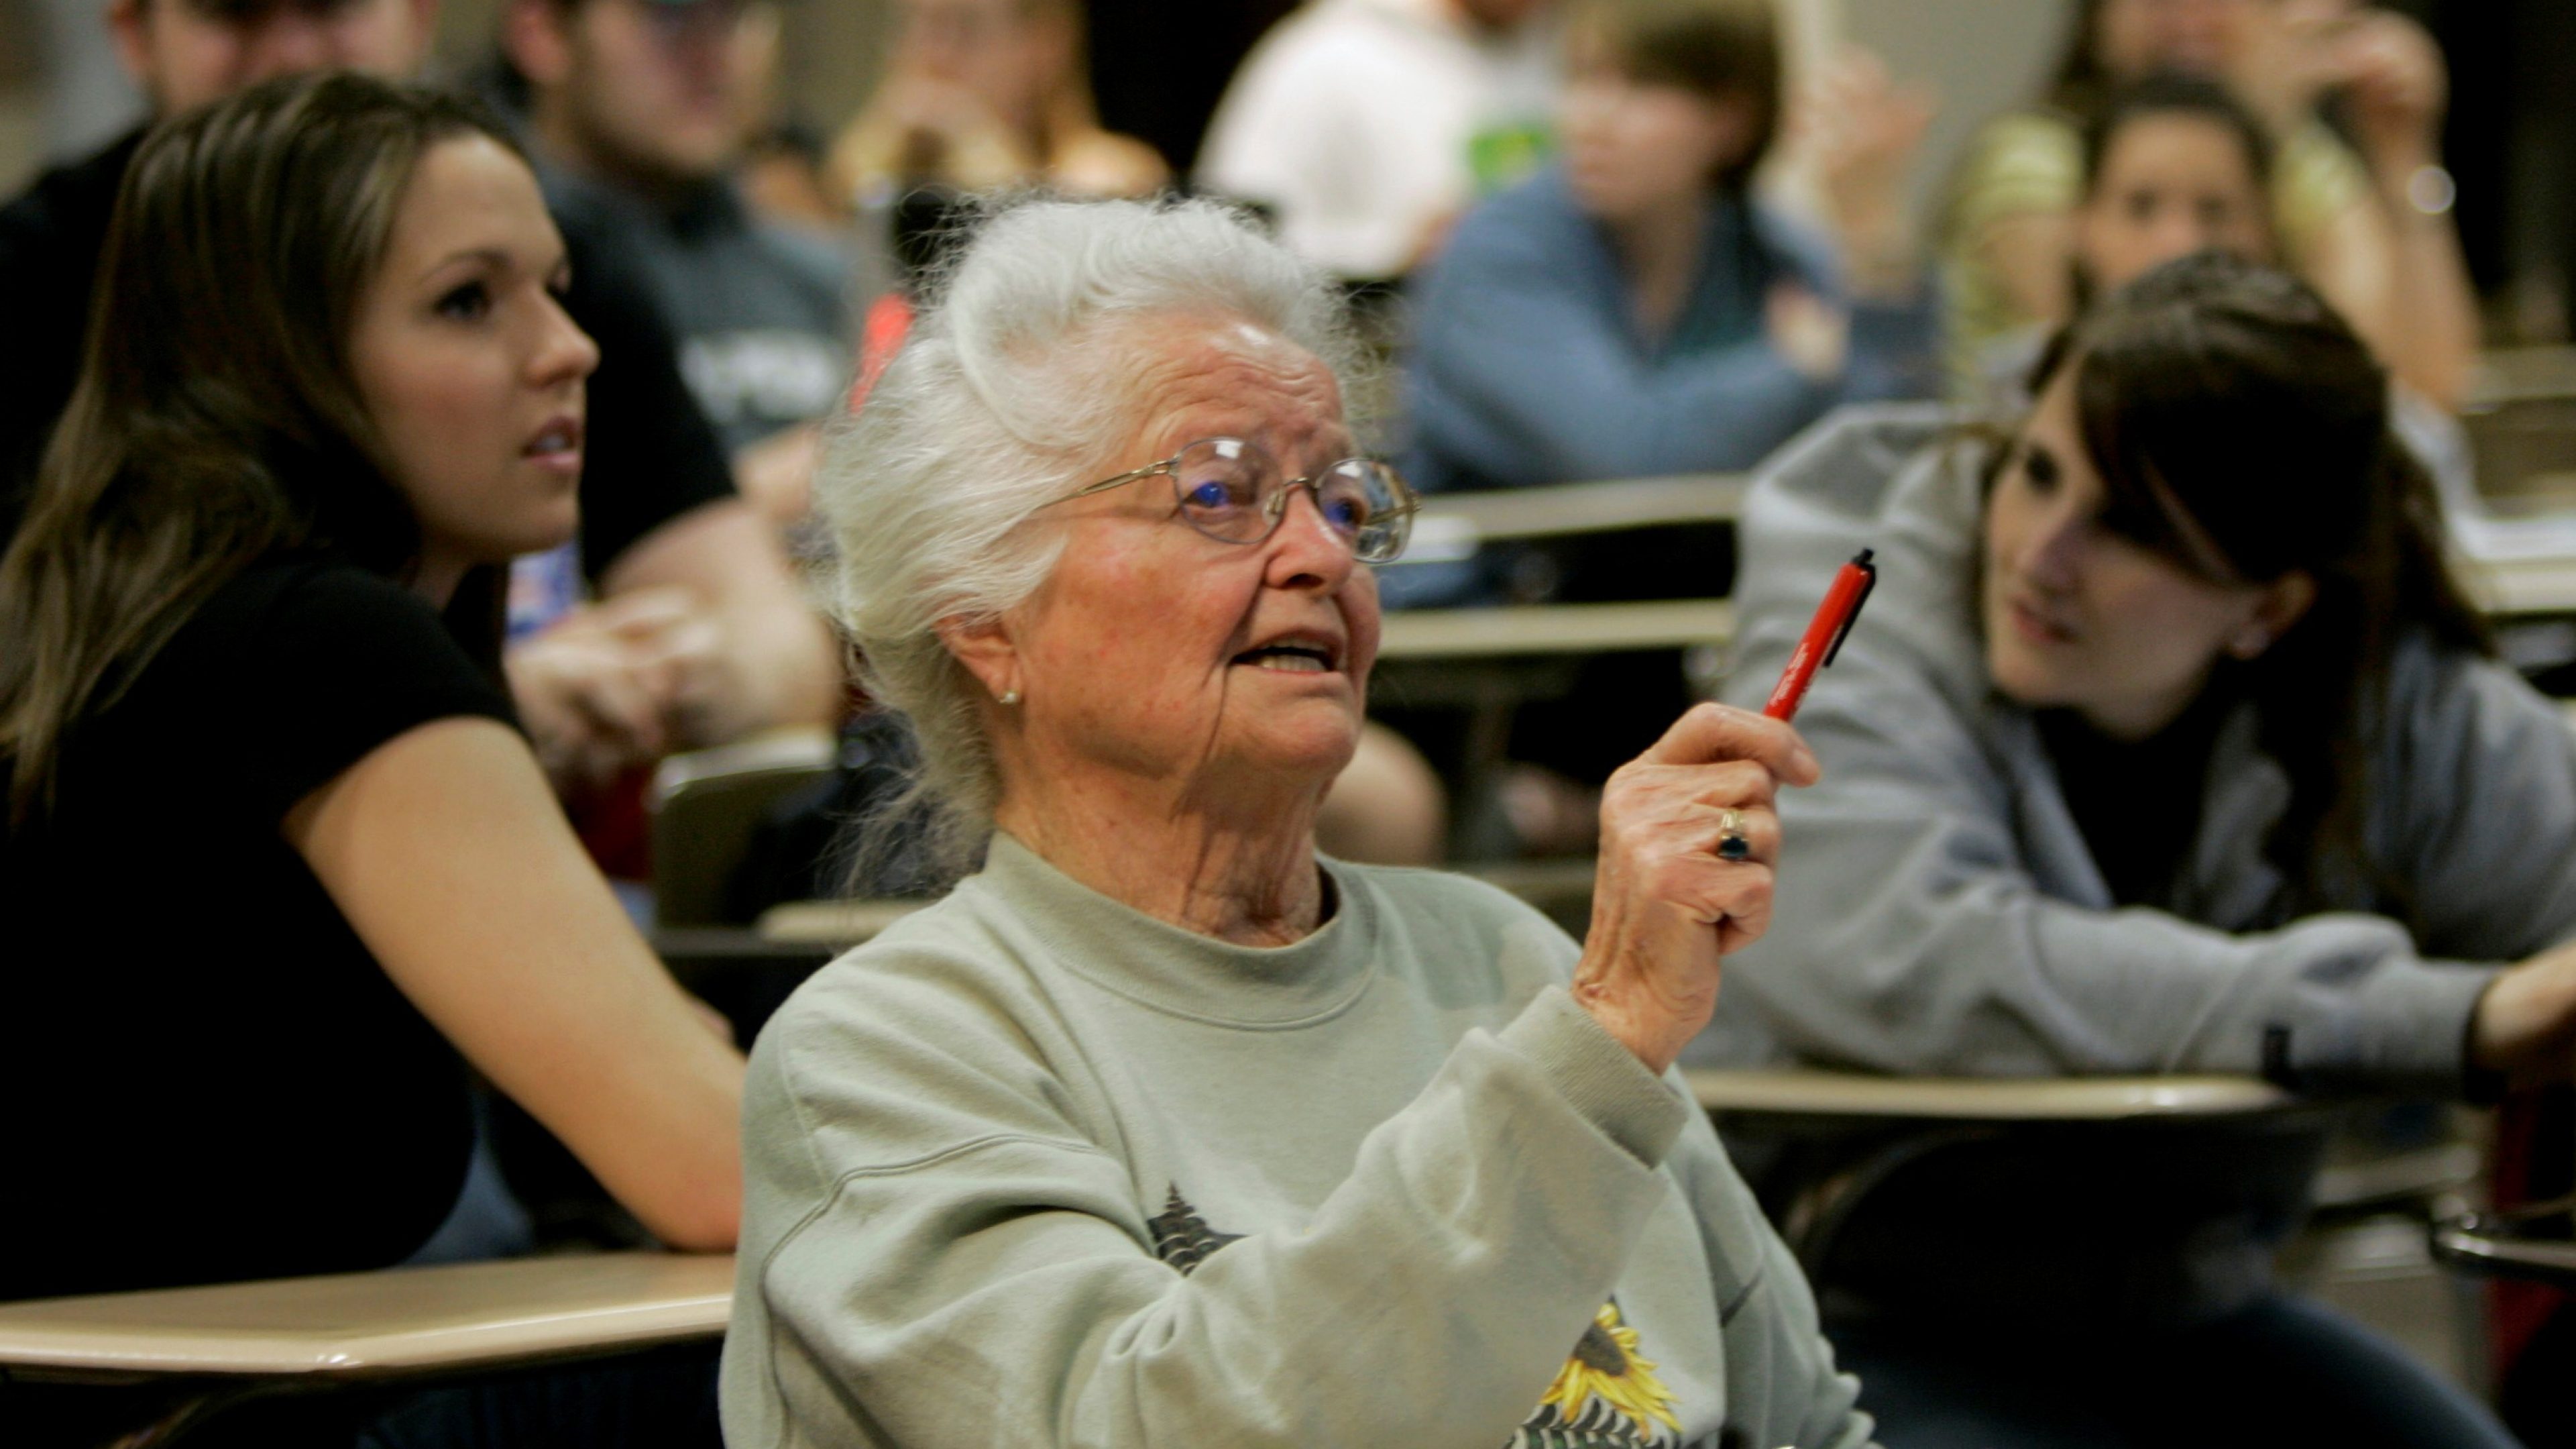 Lernfähig bis ins höchste Alter: Die US-Amerikanerin Nola Ochs beendete 2007 ihr Geschichtsstudium an der Fort Hays State University mit 95 Jahren und gilt als älteste weibliche Hochschulabsolventin aller Zeiten. (AP Photo/Charlie Riedel)